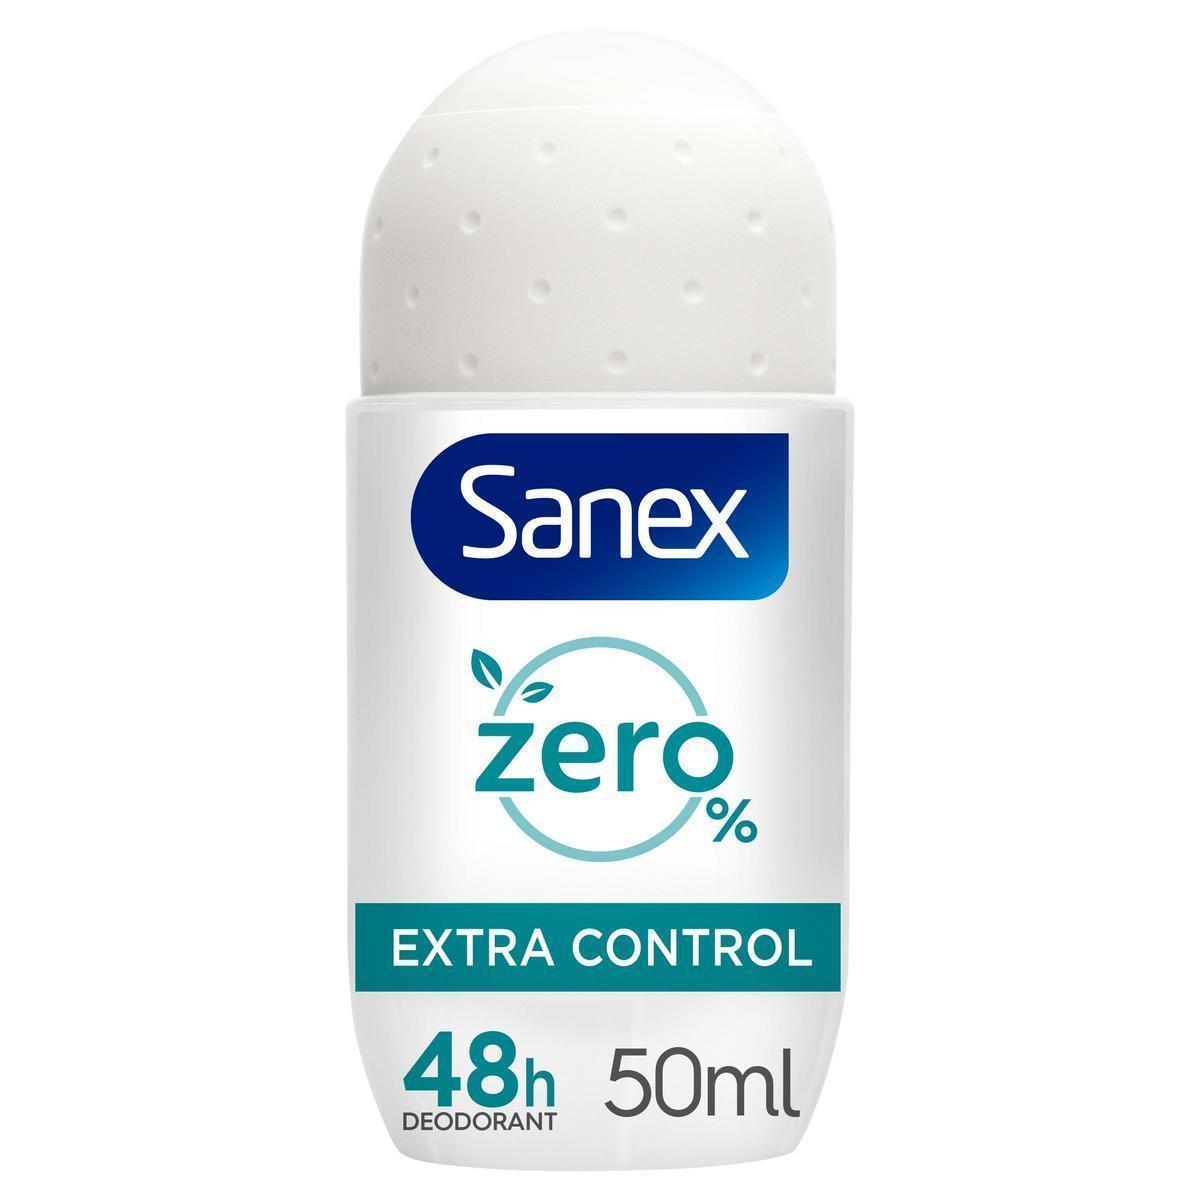 Sanex - Desodorante roll-on Sanex Zero% Extra Control protección 48h 50ml